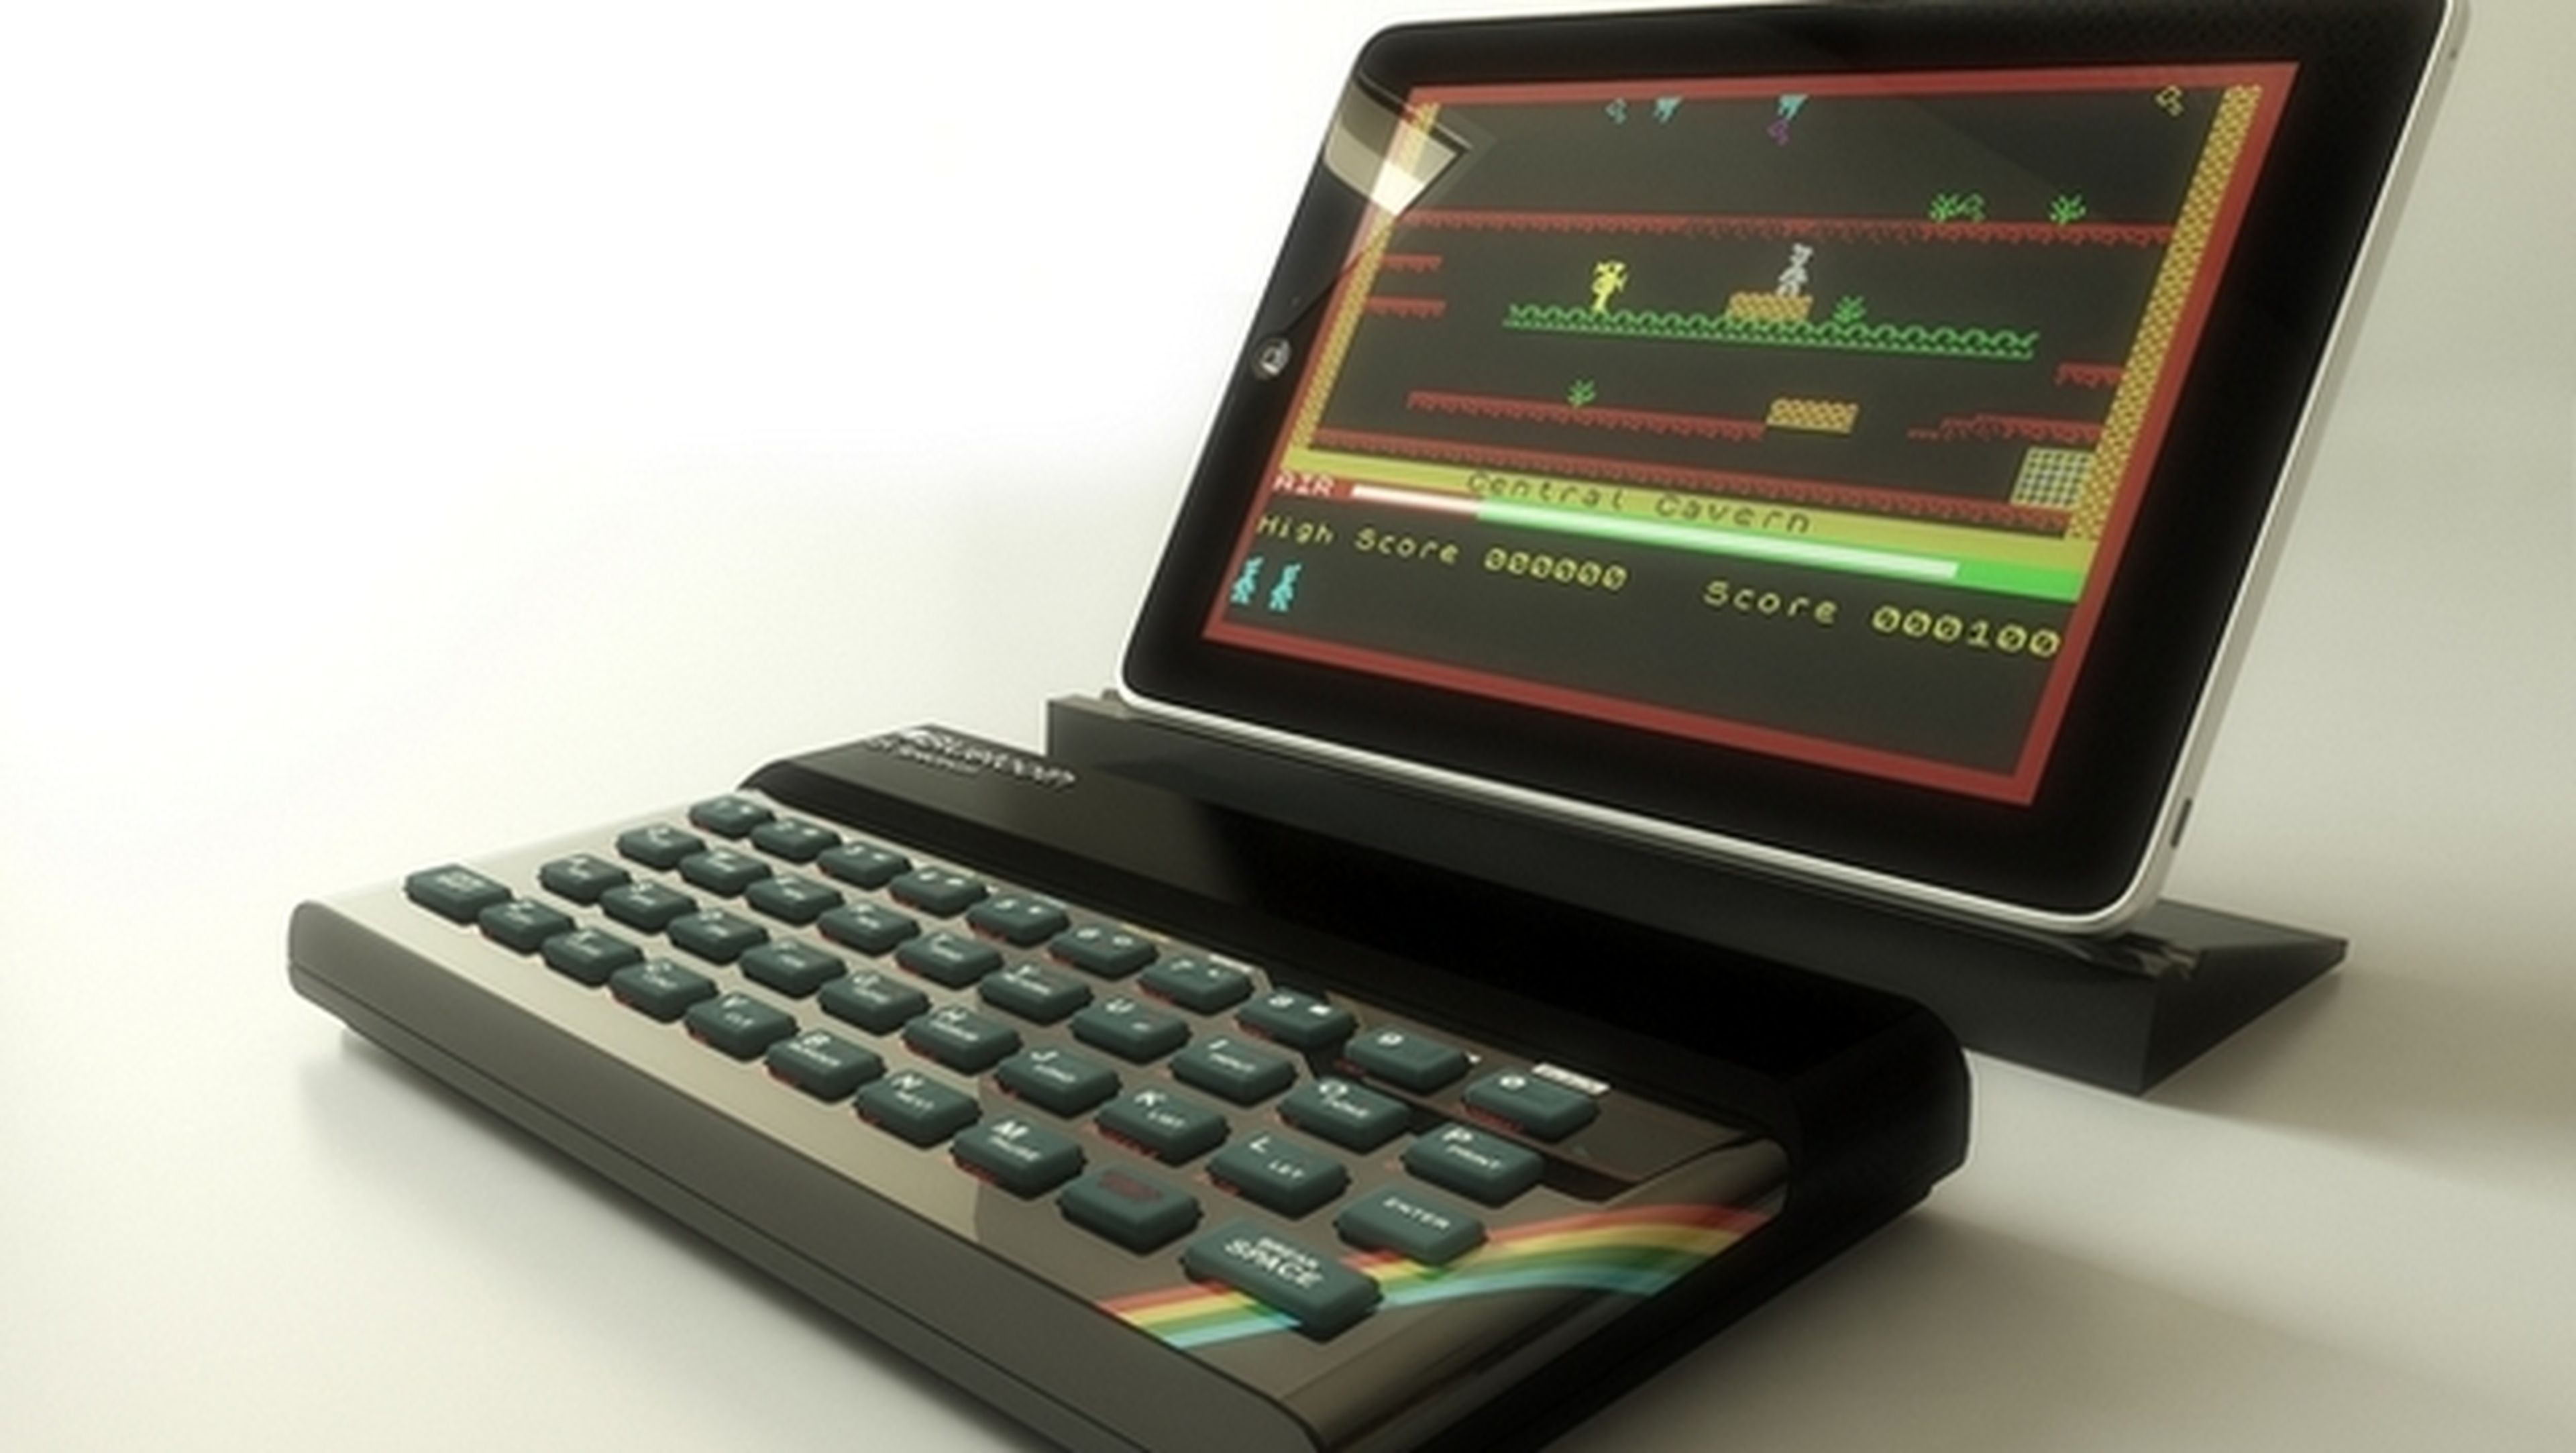 El mítico ordenador Sinclair ZX Spectrum vuelve en forma de teclado Bluetooth para tablets, smartphone, PC y Mac. Compatible con emuladores.